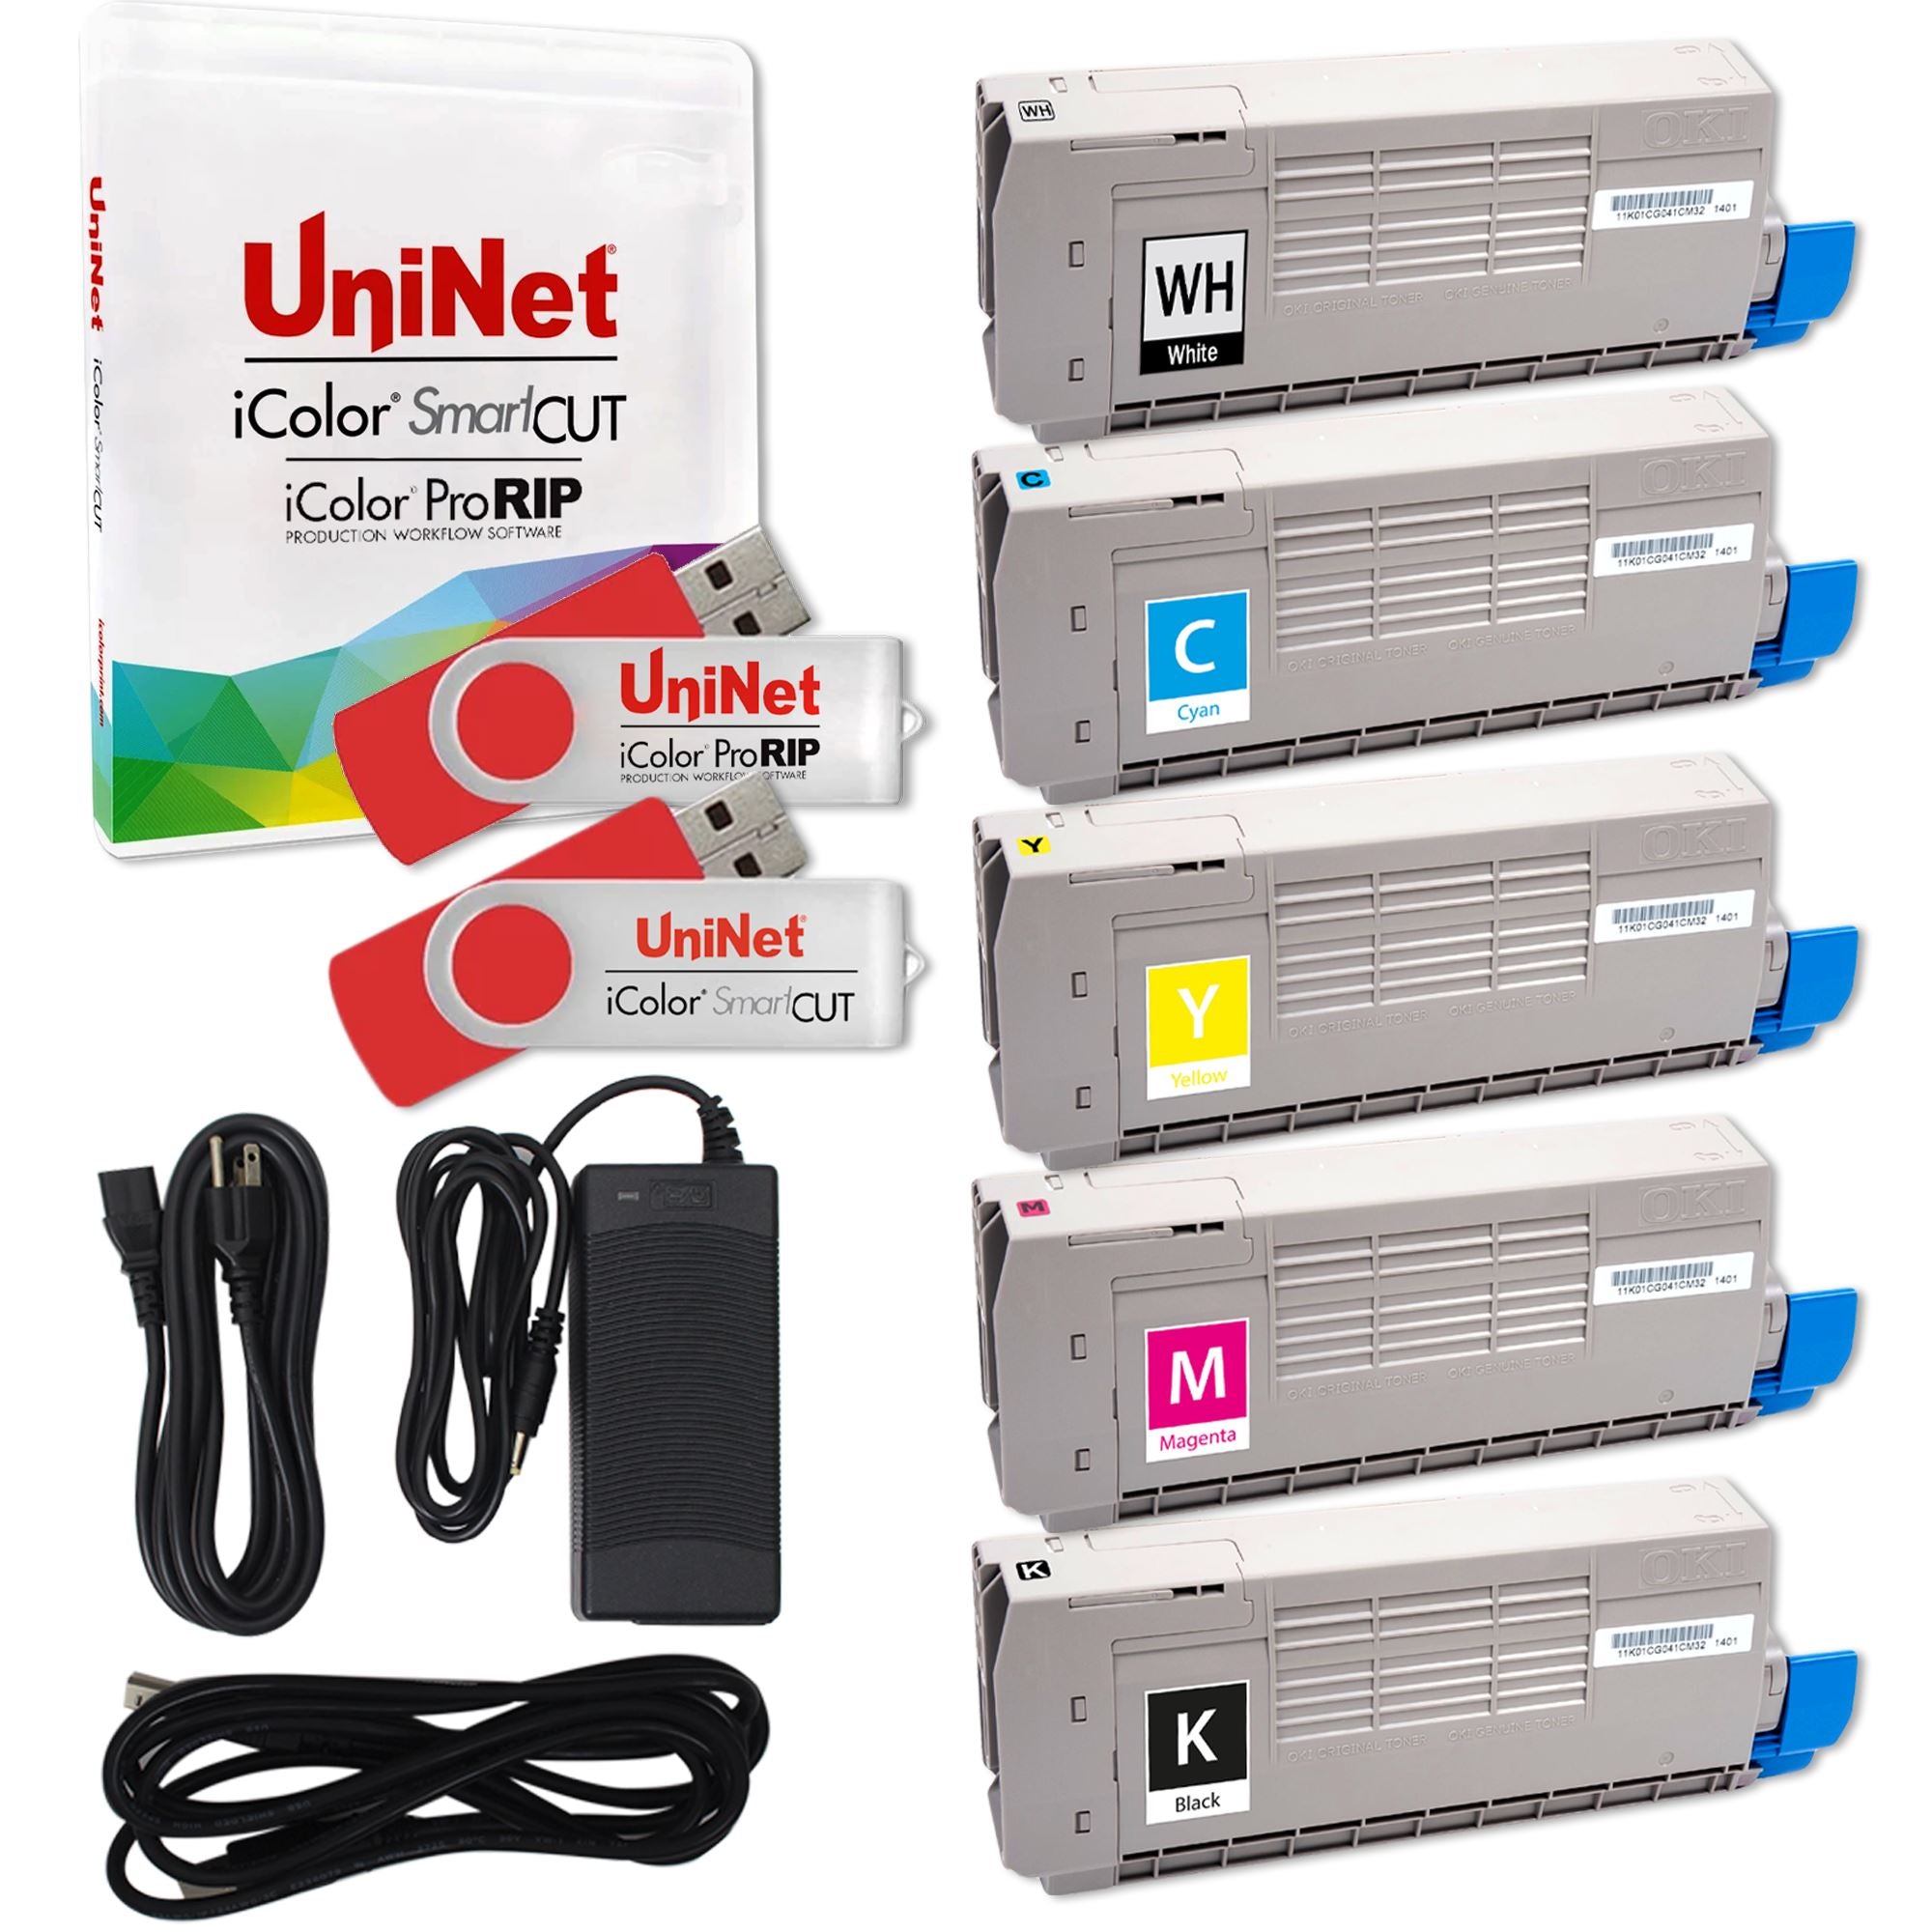 Uninet iColor 560 - Studio Package